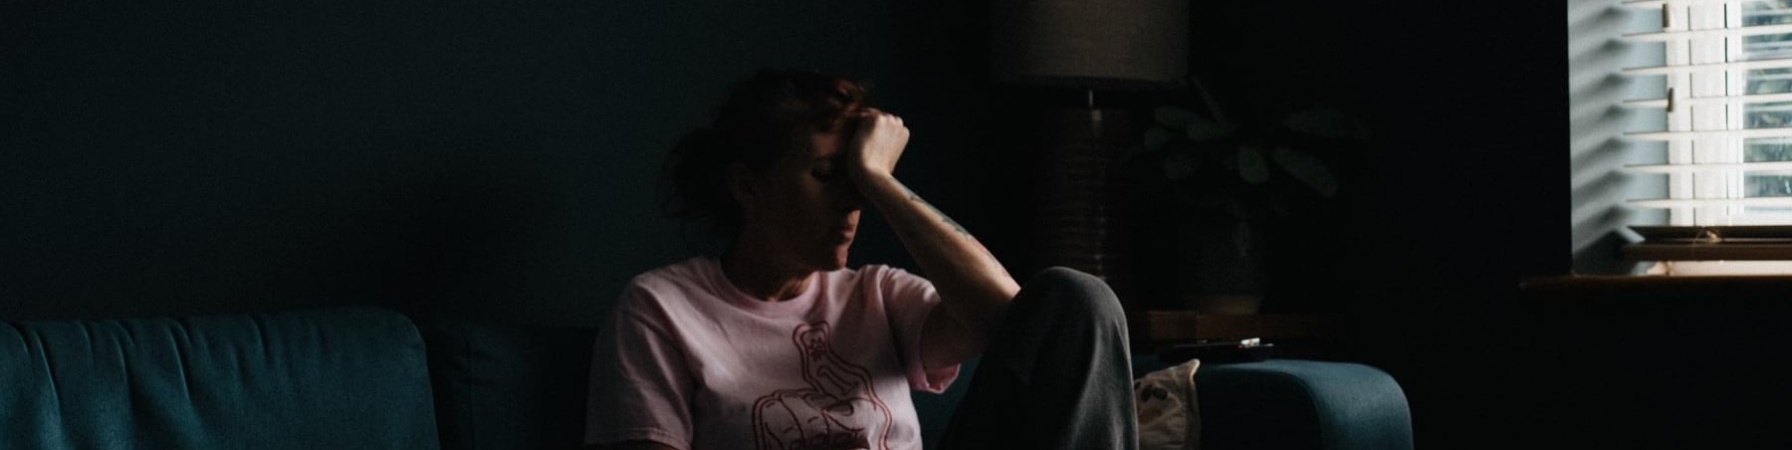 Una donna in una stanza semi buia è seduta sul divano e ha la testa appoggiata alla mano con un aria molto afflitta